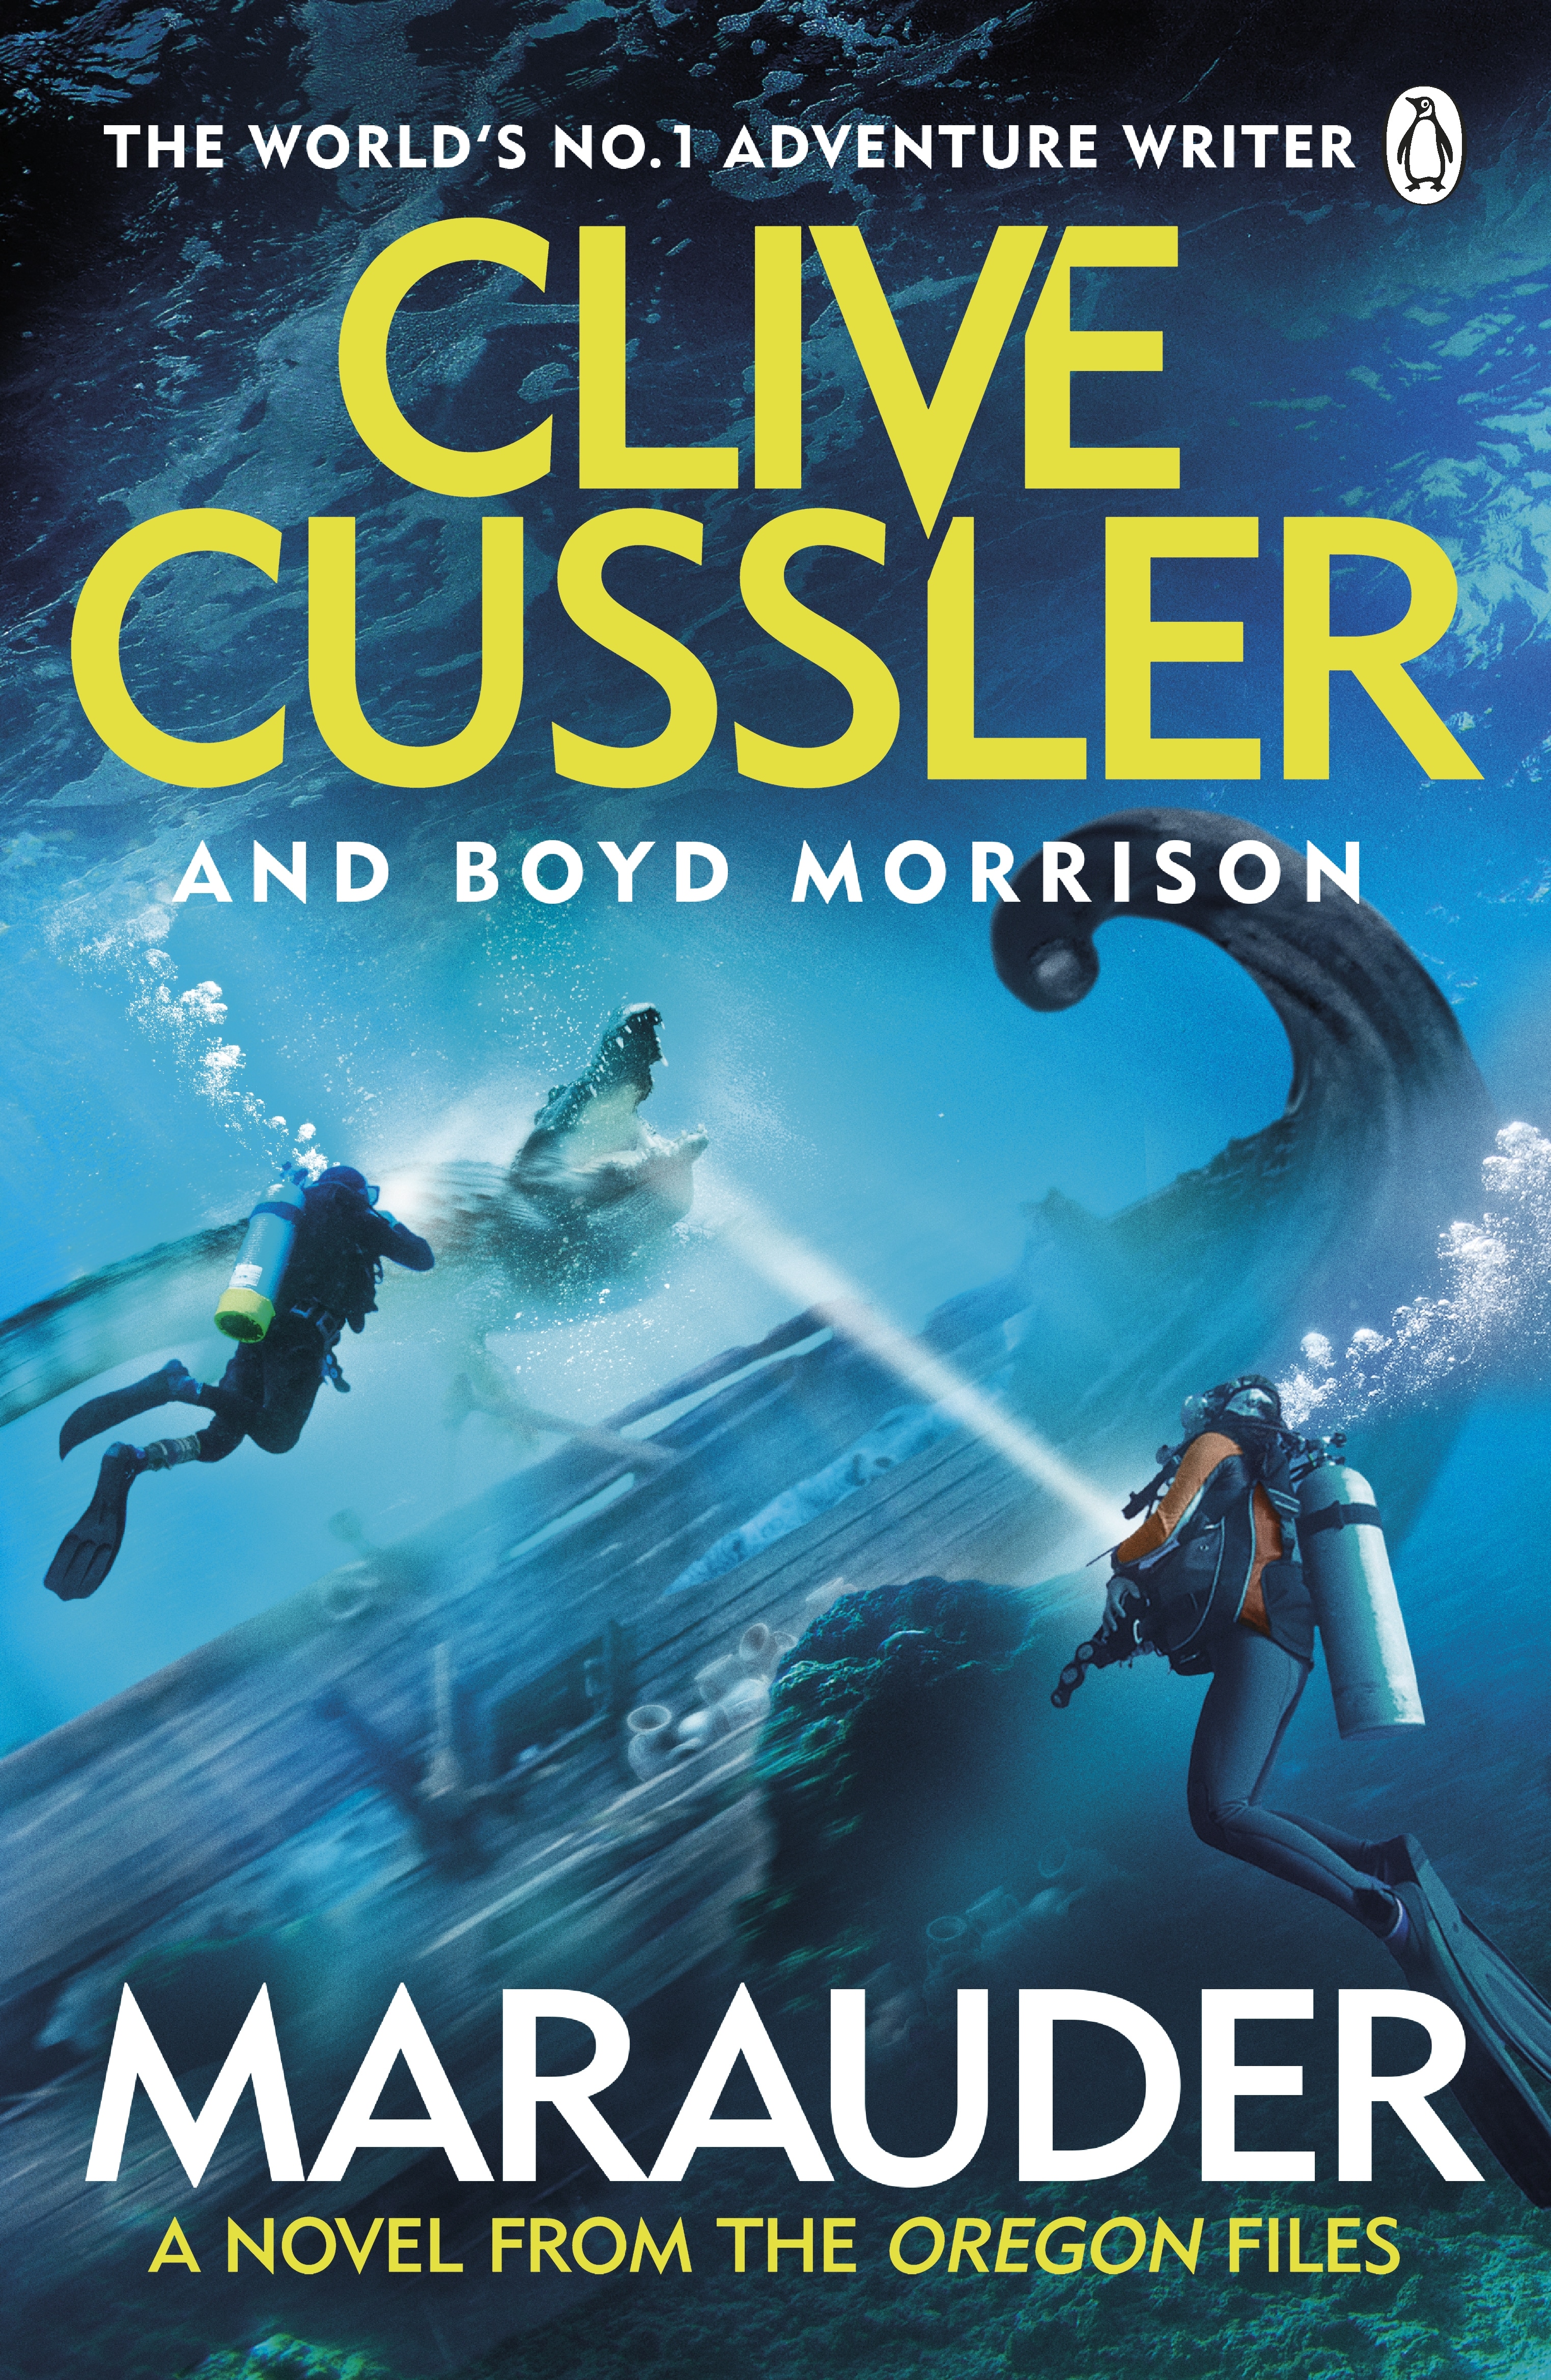 Book “Marauder” by Clive Cussler, Boyd Morrison — September 16, 2021